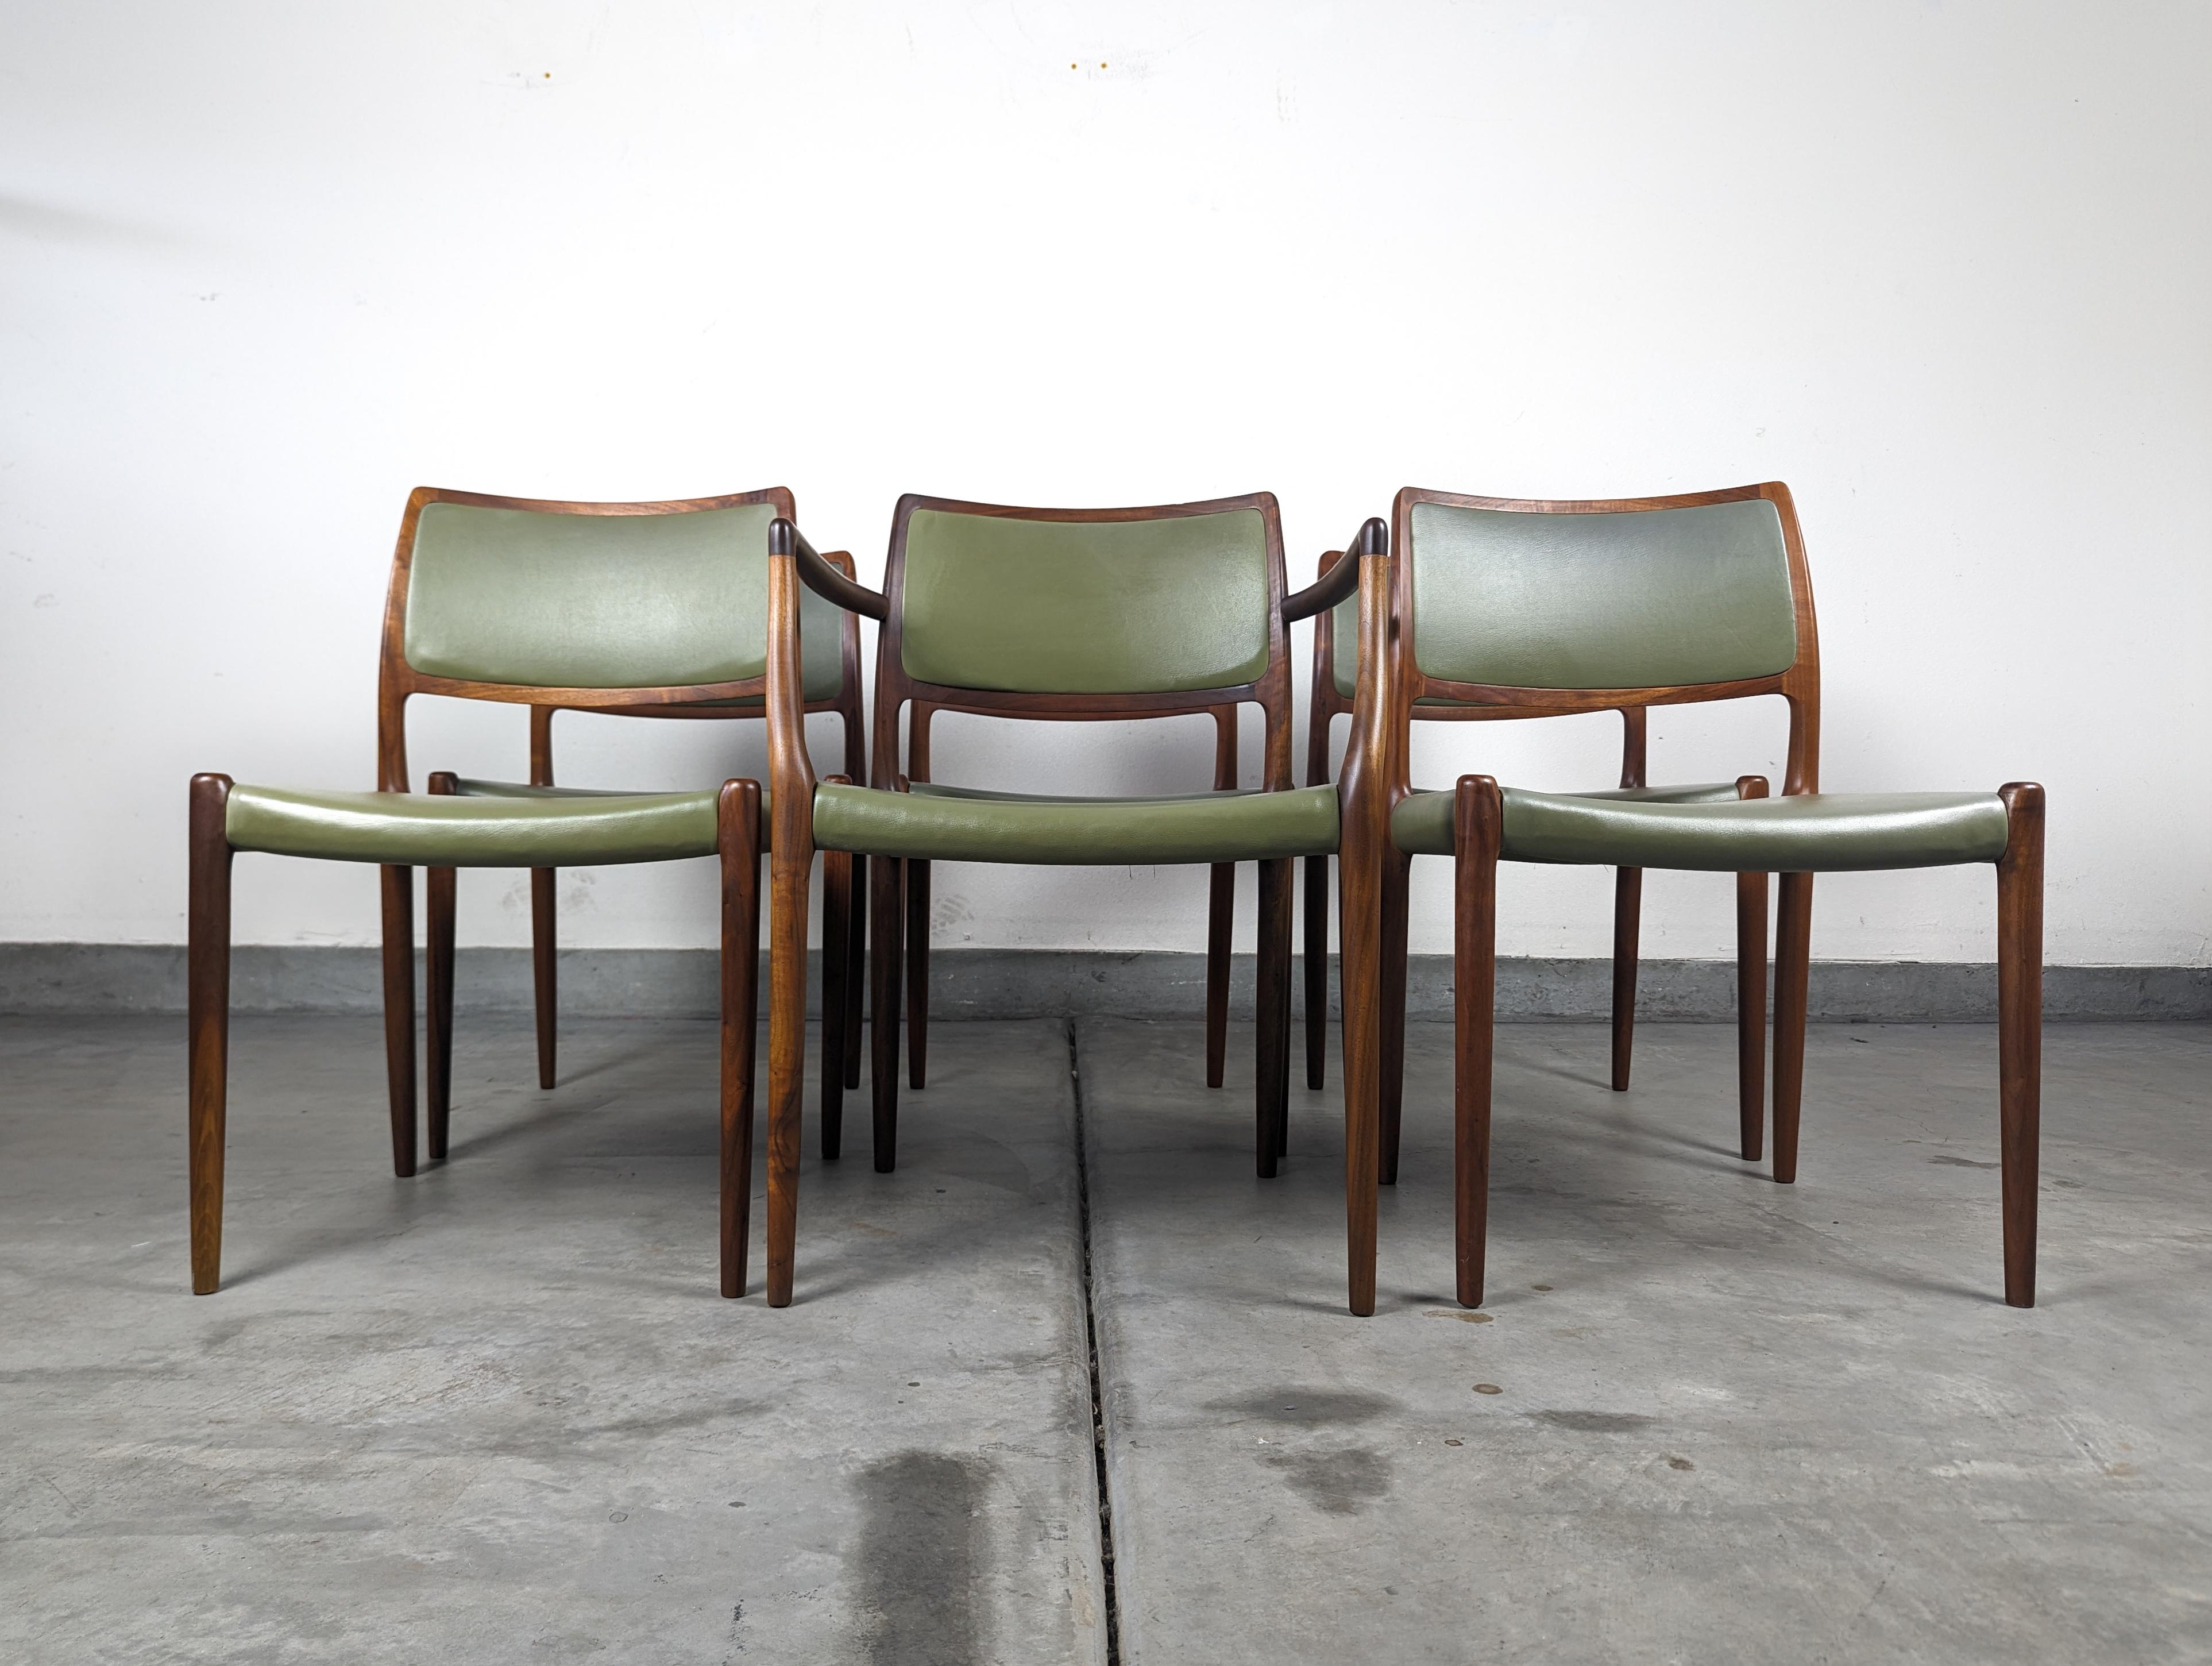 Voici un trésor intemporel pour votre salle à manger - un ensemble de six chaises de salle à manger danoises modernes du milieu du siècle dernier, conçues par le légendaire Niels Otto Møller pour J.L. Møller. Ces chaises modèle 80, originaires du